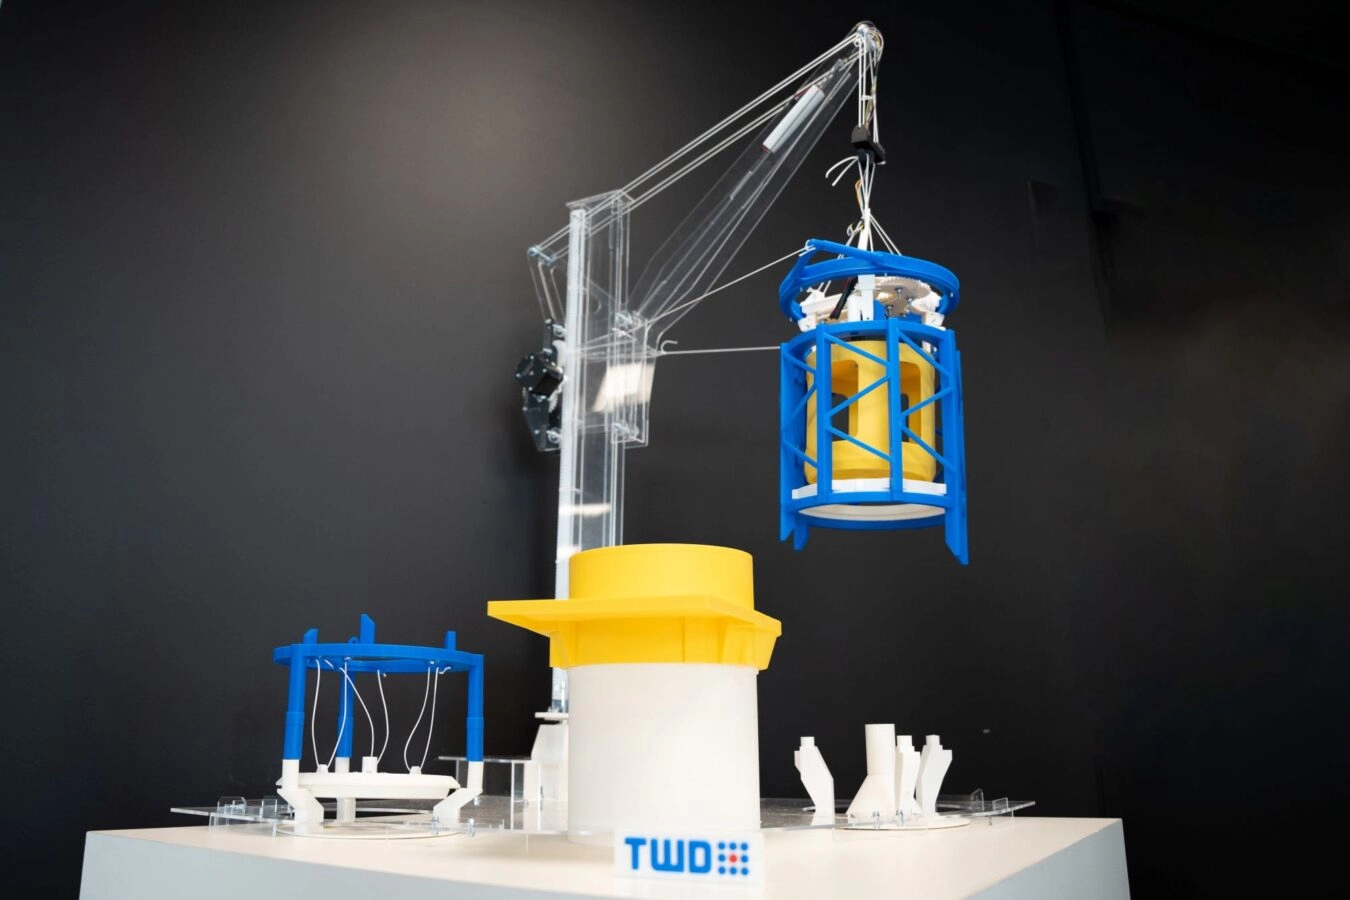 TWD Innovation: smart and multi-functional Modular Tugger Frame